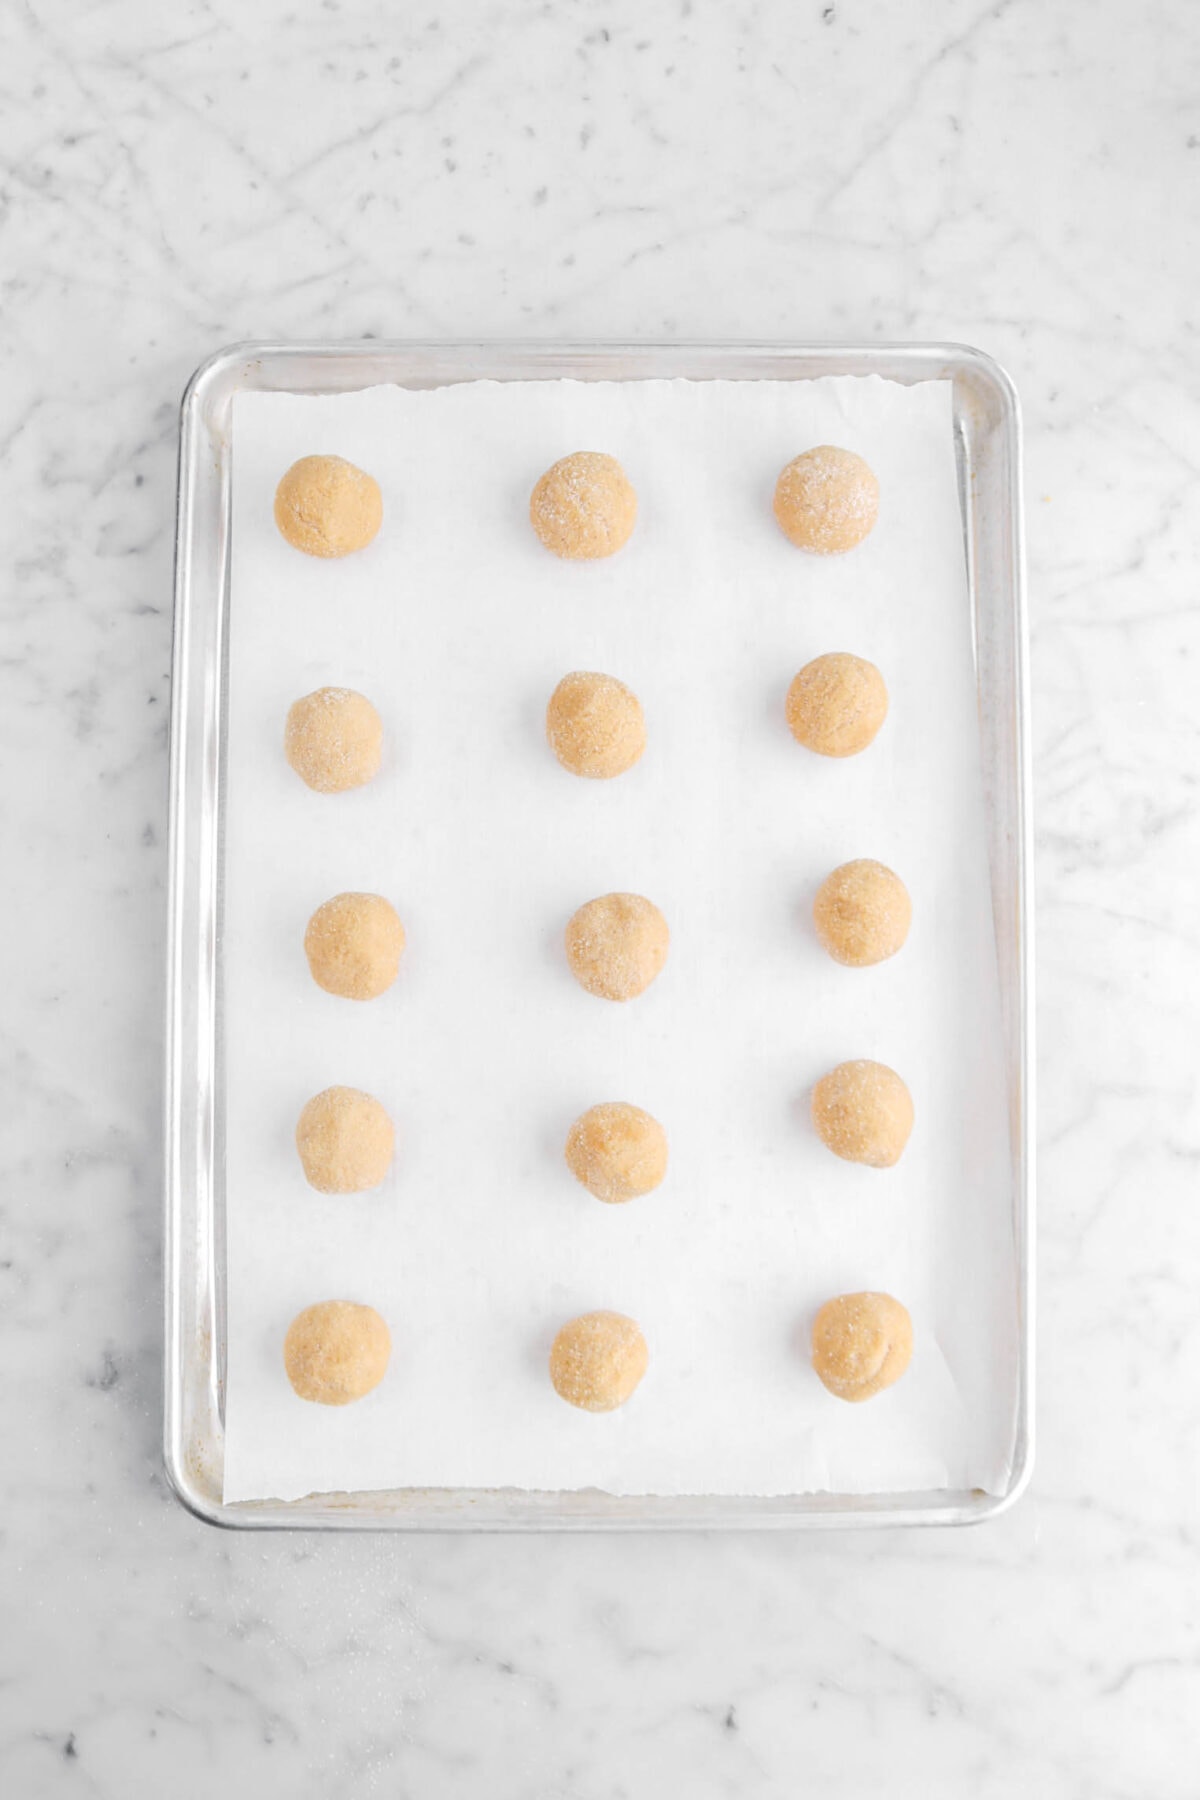 fifteen cookie dough balls on lined sheet pan.